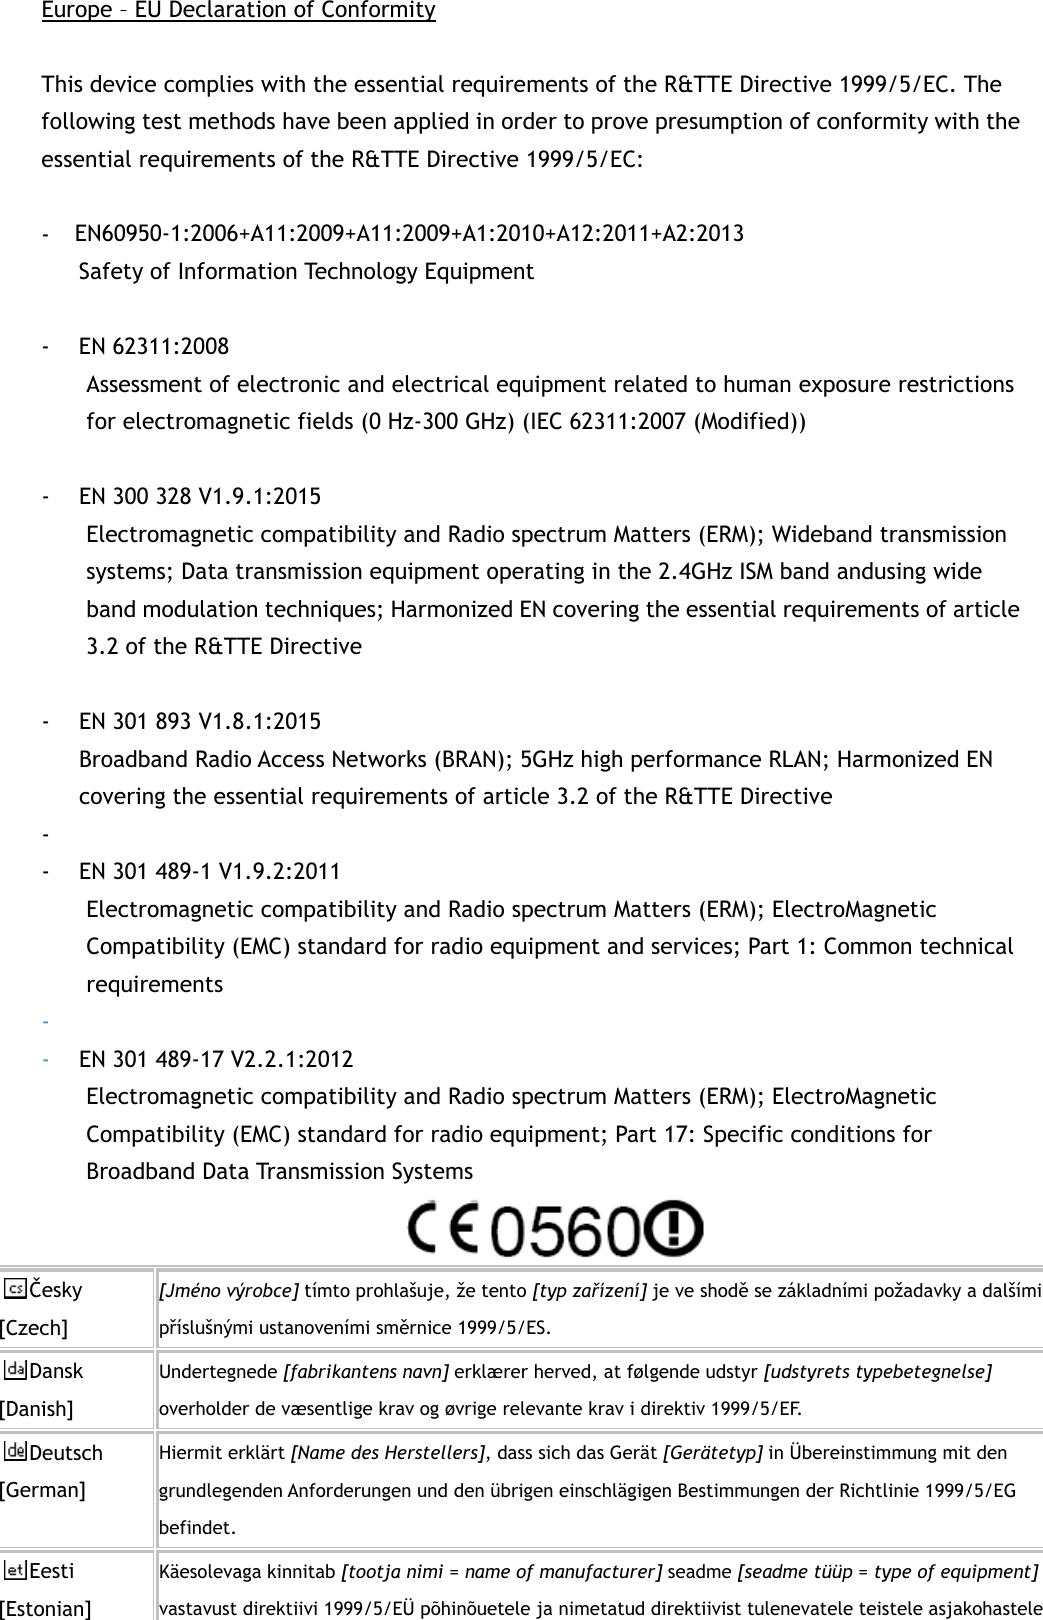 Europe – EU Declaration of Conformity  This device complies with the essential requirements of the R&amp;TTE Directive 1999/5/EC. The following test methods have been applied in order to prove presumption of conformity with the essential requirements of the R&amp;TTE Directive 1999/5/EC:  - EN60950-1/A12:2011+A2:2013  Safety of Information Technology Equipment  - EN 62311:2008   Assessment of electronic and electrical equipment related to human exposure restrictions for electromagnetic fields (0 Hz-300 GHz) (IEC 62311:2007 (Modified))    - EN 300 328 V1.9.1:2015   Electromagnetic compatibility and Radio spectrum Matters (ERM); Wideband transmission systems; Data transmission equipment operating in the 2.4GHz ISM band andusing wide band modulation techniques; Harmonized EN covering the essential requirements of article 3.2 of the R&amp;TTE Directive  - EN 301 893 V1.8.1:2015   Broadband Radio Access Networks (BRAN); 5GHz high performance RLAN; Harmonized EN covering the essential requirements of article 3.2 of the R&amp;TTE Directive -  - EN 301 489-1 V1.9.2:2011 Electromagnetic compatibility and Radio spectrum Matters (ERM); ElectroMagnetic Compatibility (EMC) standard for radio equipment and services; Part 1: Common technical requirements -  - EN 301 489-17 V2.2.1:2012   Electromagnetic compatibility and Radio spectrum Matters (ERM); ElectroMagnetic Compatibility (EMC) standard for radio equipment; Part 17: Specific conditions for Broadband Data Transmission Systems  Česky [Czech] [Jméno výrobce] tímto prohlašuje, že tento [typ zařízení] je ve shodě se základními požadavky a dalšími příslušnými ustanoveními směrnice 1999/5/ES. Dansk [Danish] Undertegnede [fabrikantens navn] erklærer herved, at følgende udstyr [udstyrets typebetegnelse] overholder de væsentlige krav og øvrige relevante krav i direktiv 1999/5/EF. Deutsch [German] Hiermit erklärt [Name des Herstellers], dass sich das Gerät [Gerätetyp] in Übereinstimmung mit den grundlegenden Anforderungen und den übrigen einschlägigen Bestimmungen der Richtlinie 1999/5/EG befindet. Eesti [Estonian] Käesolevaga kinnitab [tootja nimi = name of manufacturer] seadme [seadme tüüp = type of equipment] vastavust direktiivi 1999/5/EÜ põhinõuetele ja nimetatud direktiivist tulenevatele teistele asjakohastele EN60950-1:2006+A11:2009+A11:2009+A1:2010+A12:2011+A2:2013 